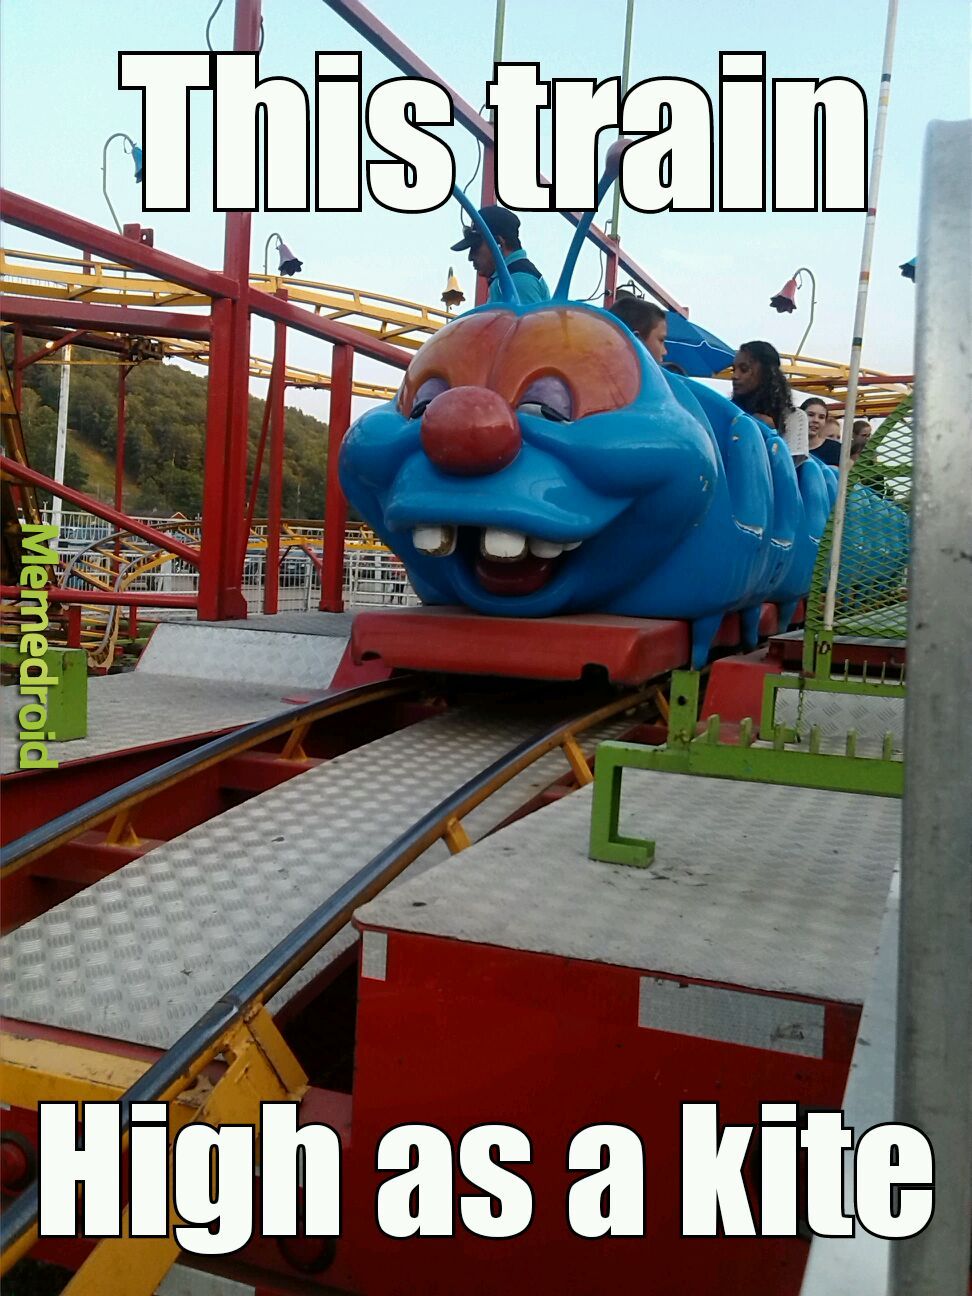 High train - meme